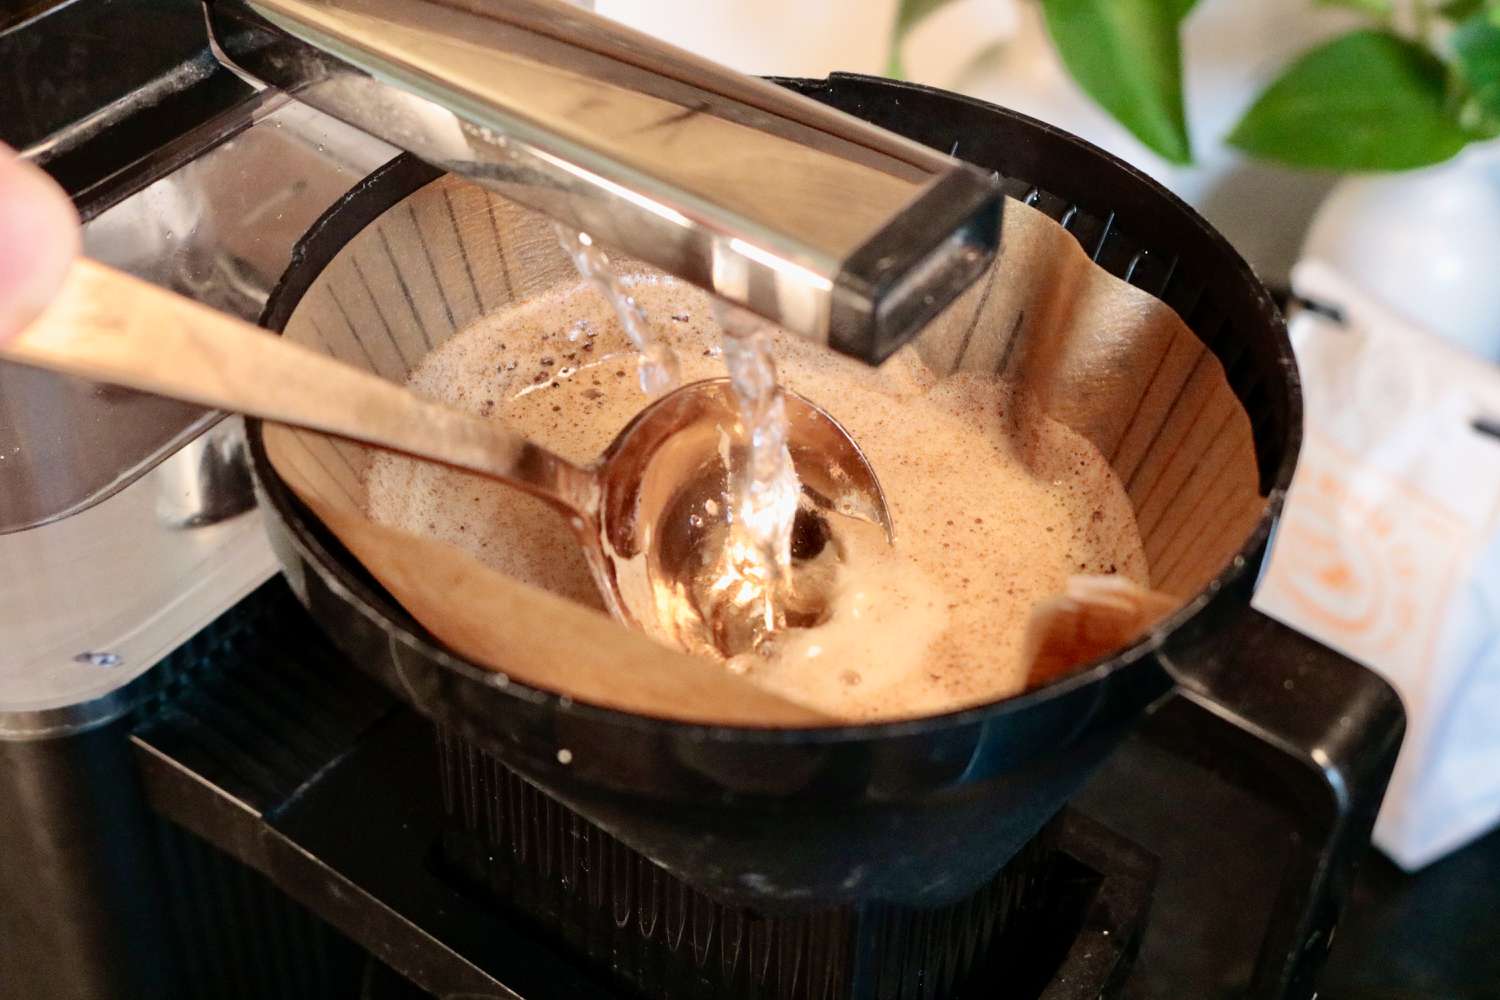 煮咖啡时用勺子搅拌咖啡渣